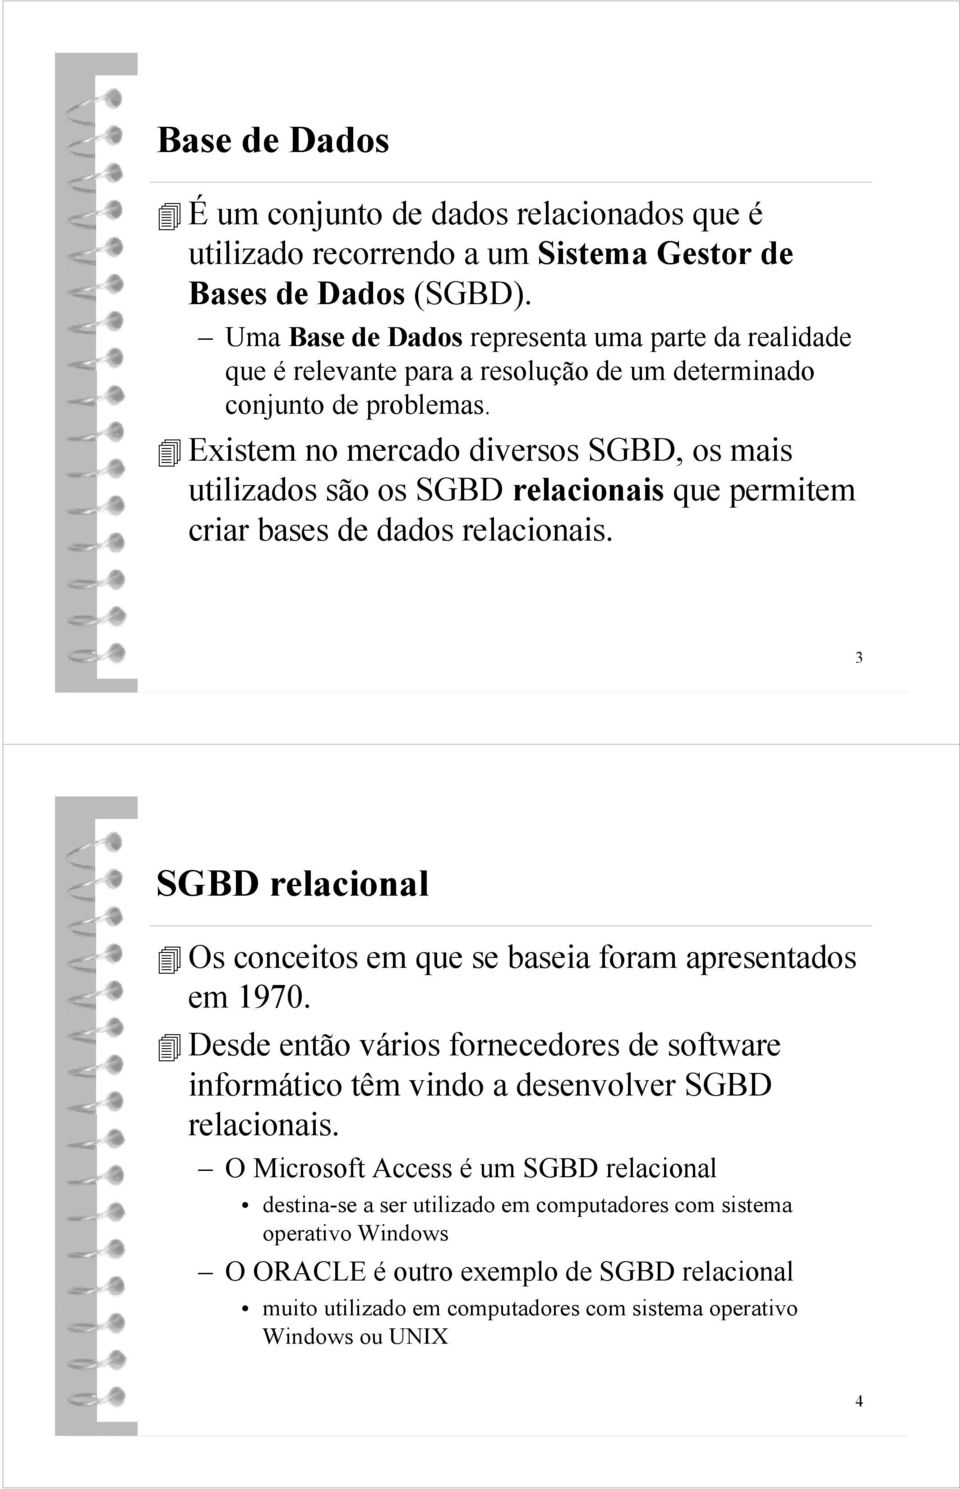 Existem no mercado diversos SGBD, os mais utilizados são os SGBD relacionais que permitem criar bases de dados relacionais.